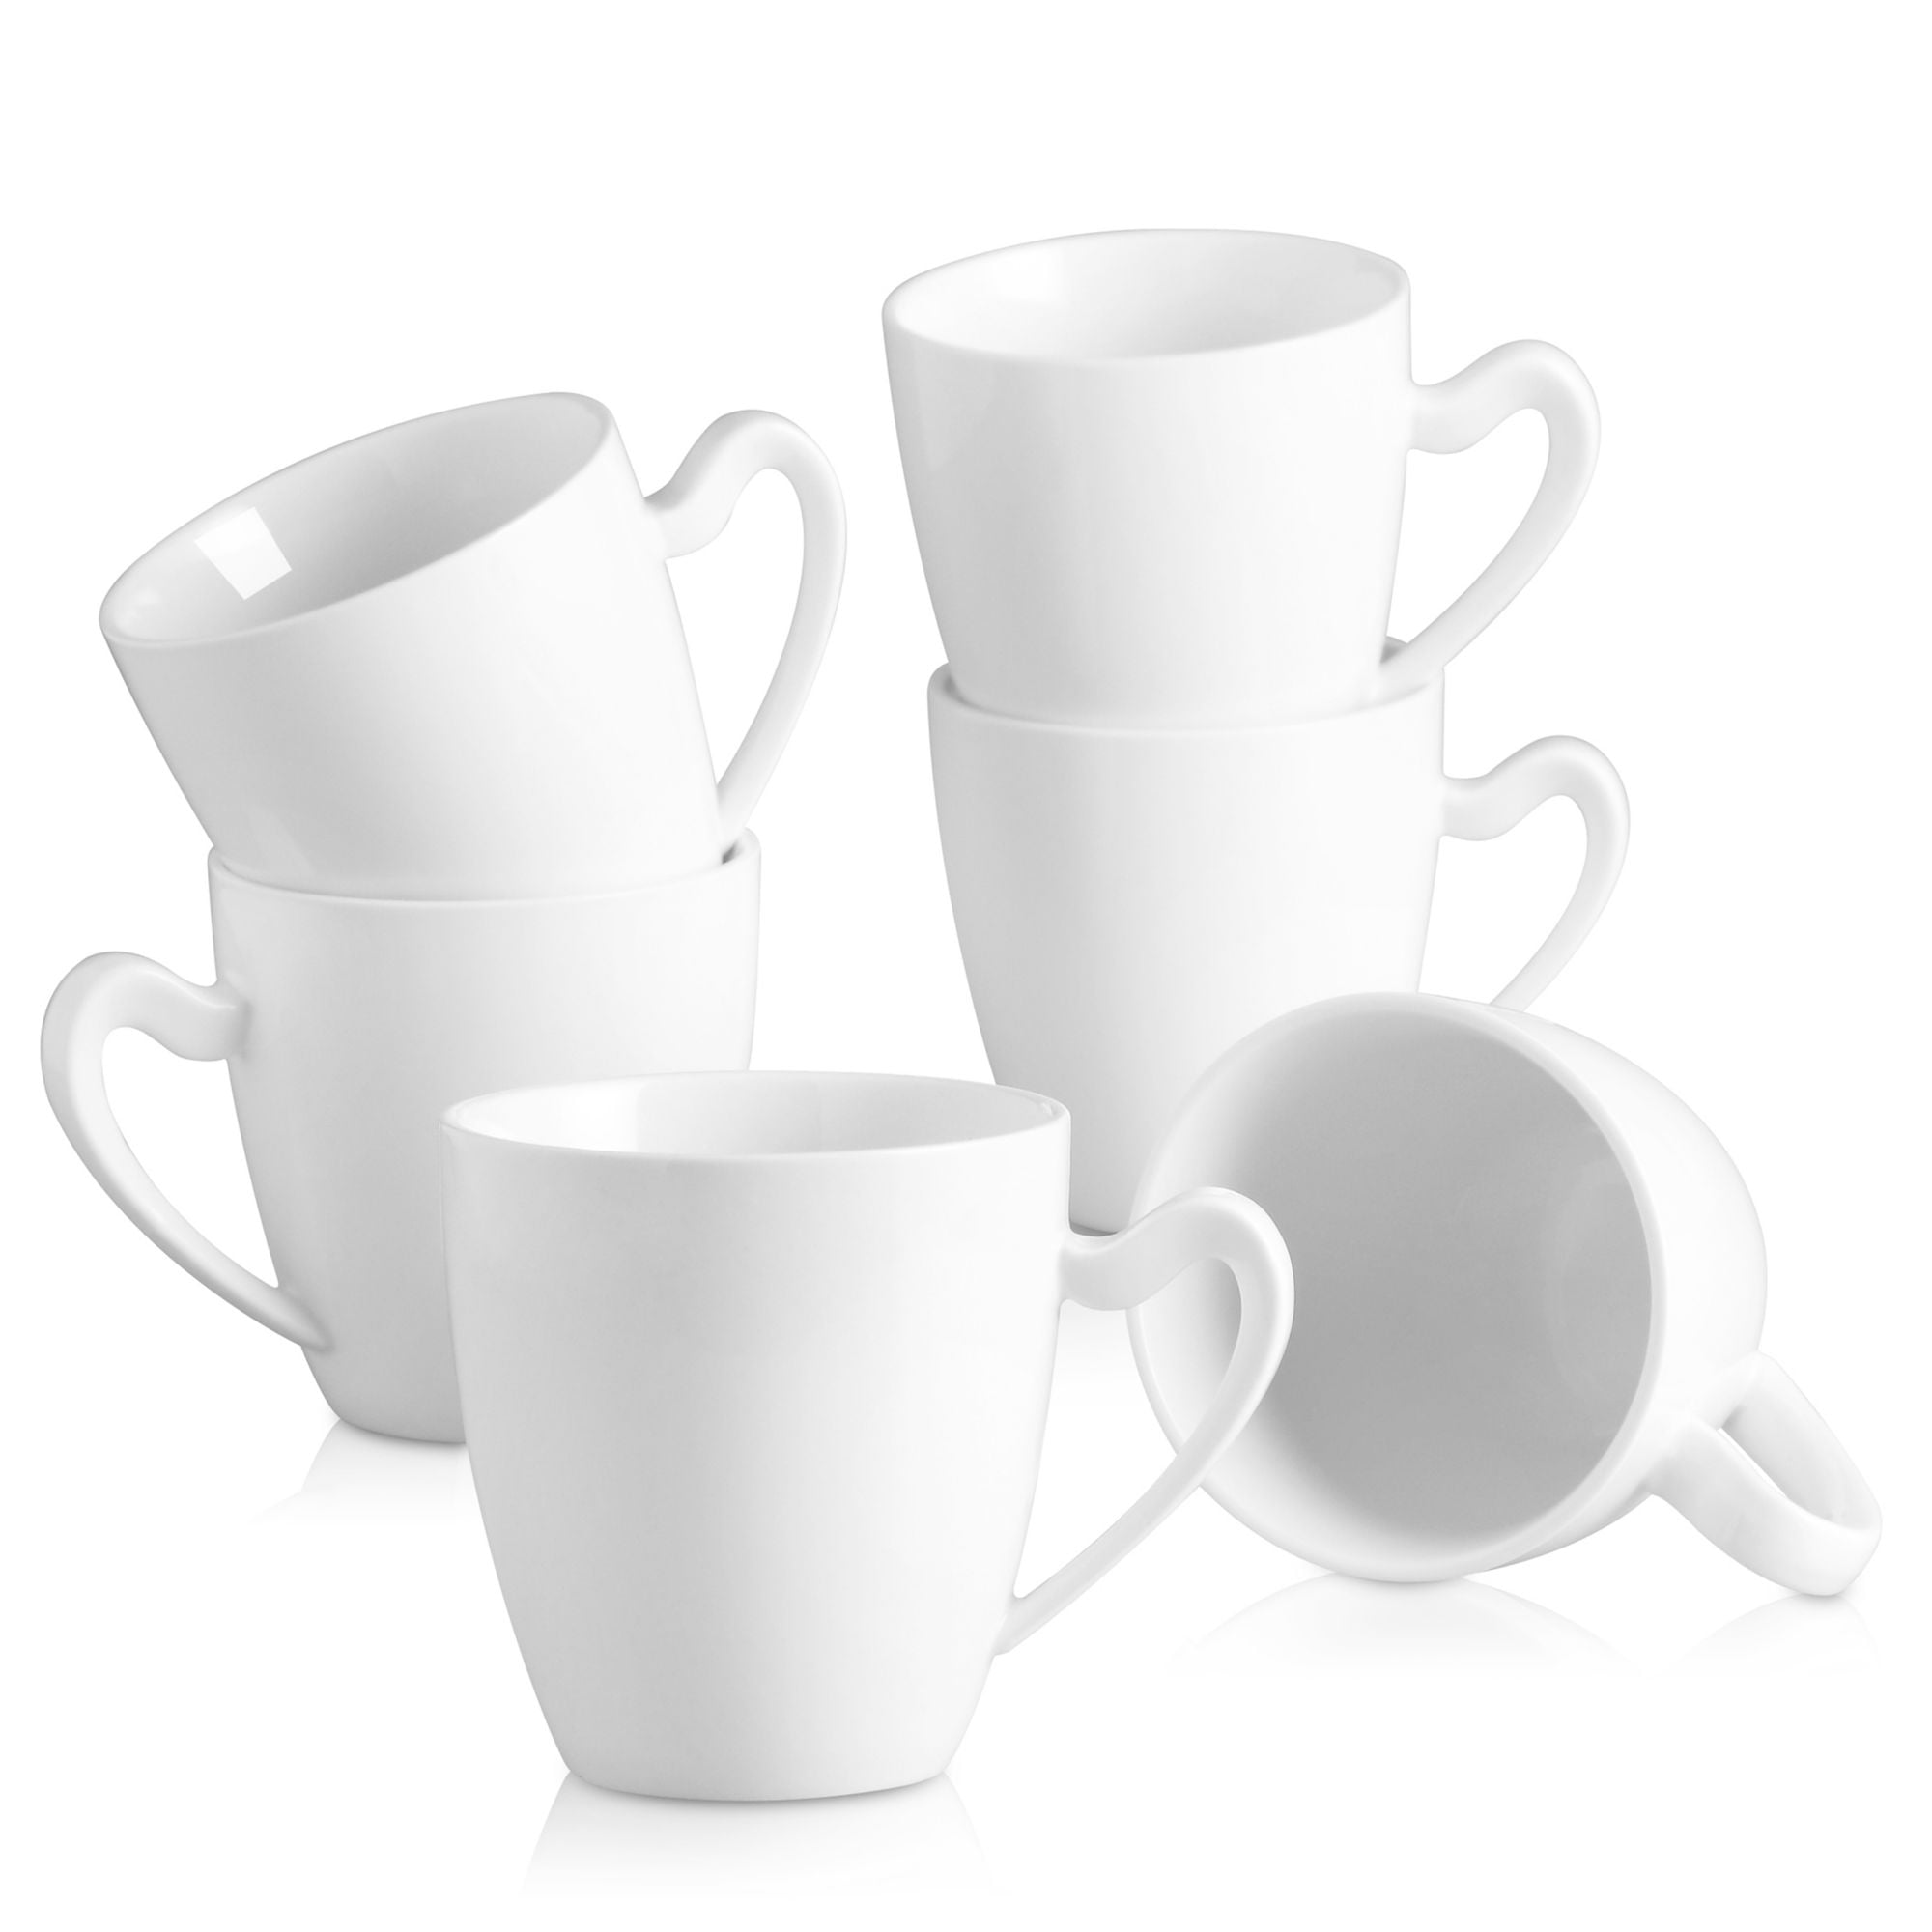 MALACASA, Series Elvira, 6 pieces 12.5 OZ Porcelain Cups 5 Mug Sets Ivory  White 